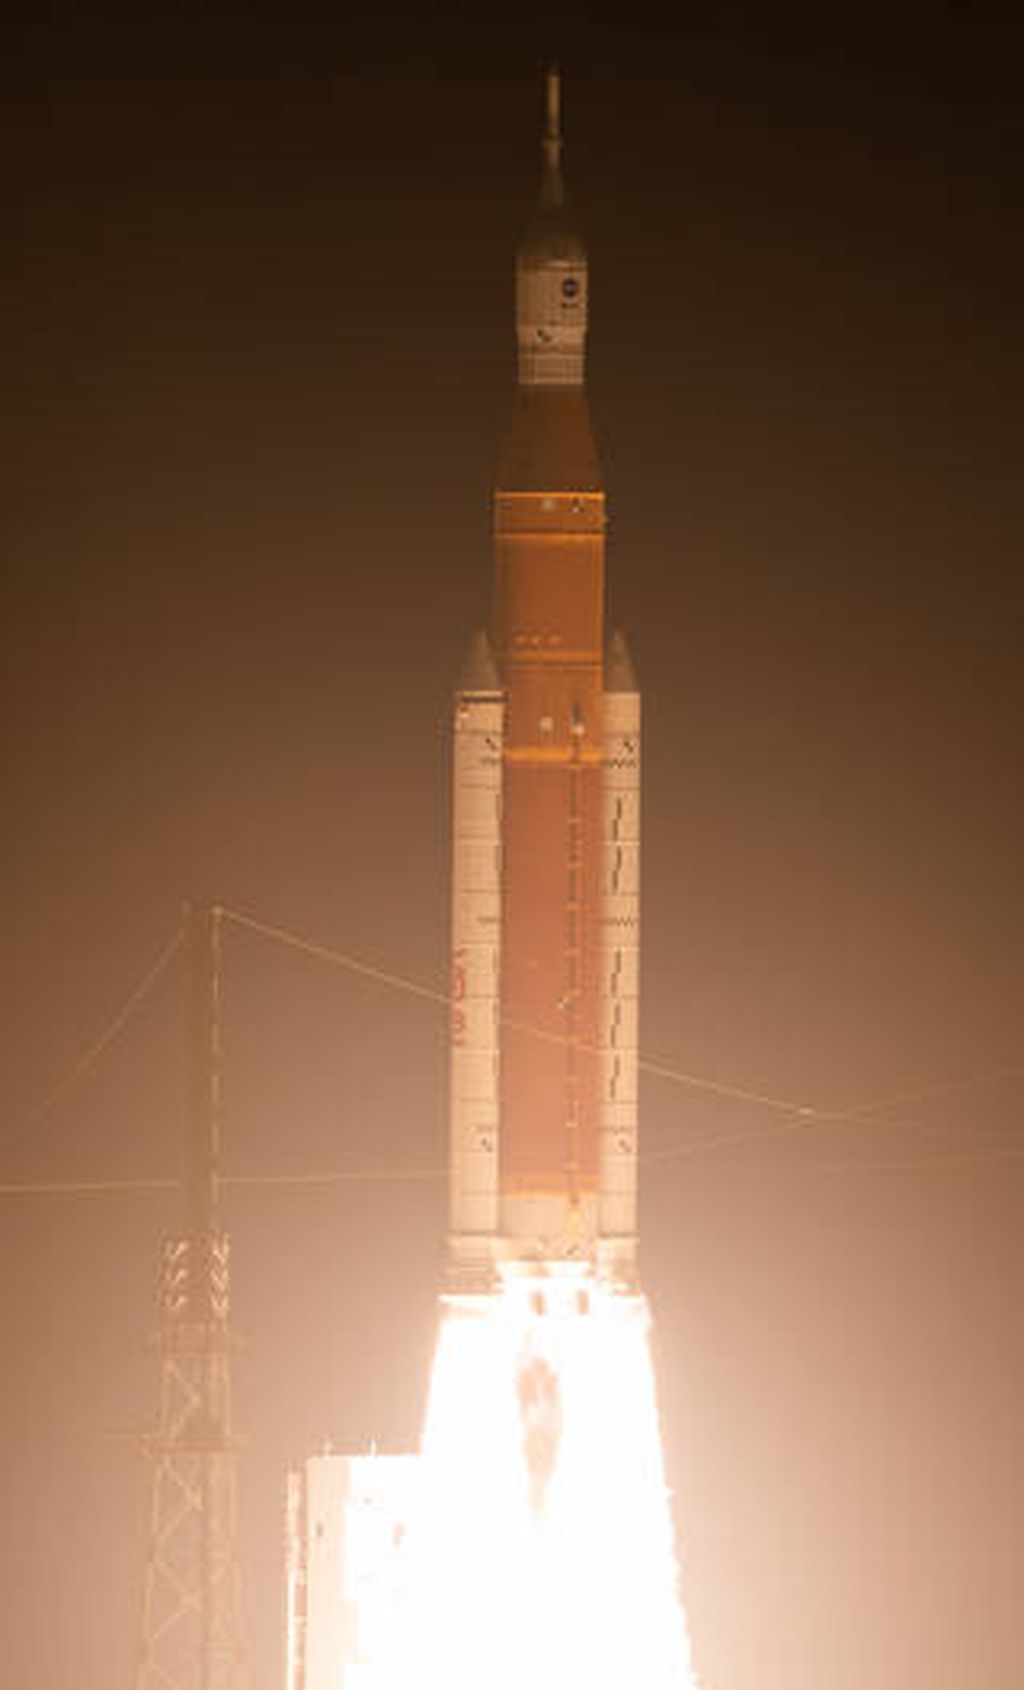 Roket pengangkut wahana Orion dalam misi Artemis 1 meluncur dari Bandar Antariksa Kennedy, Amerika Serikat, 16 November 2022. Misi Artemis 1 ini bertujuan menguji Orion apakah siap digunakan untuk mengirim antariksawan ke Bulan dan membawa mereka kembali ke Bumi.